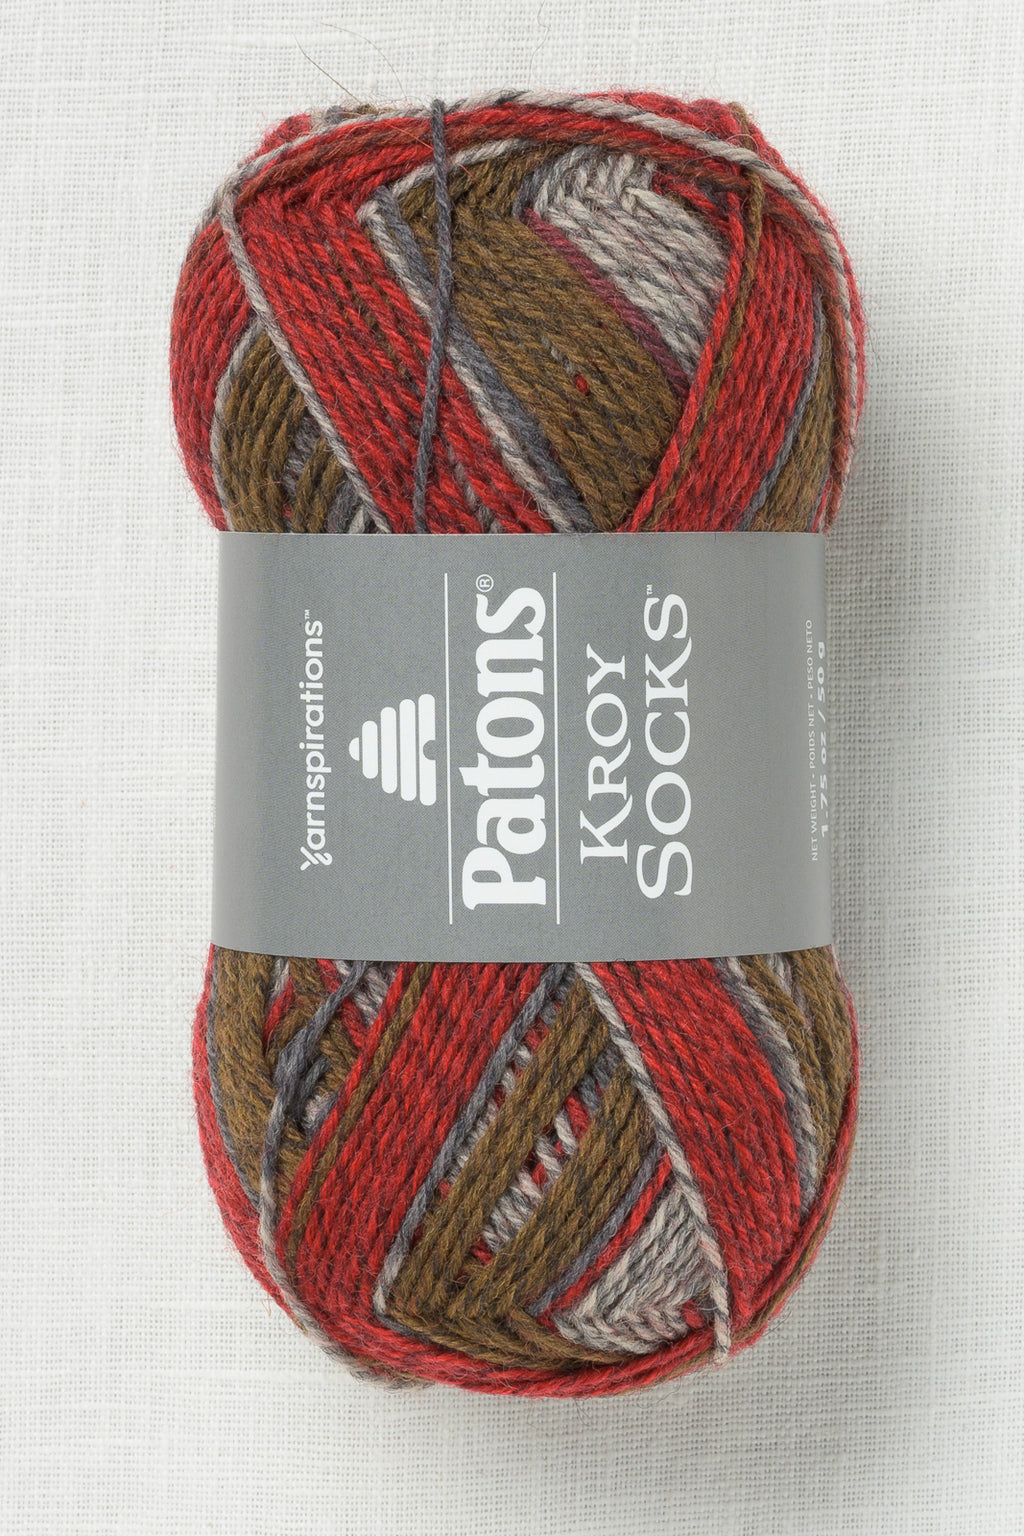 Patons Kroy Socks Grey Brown Marl